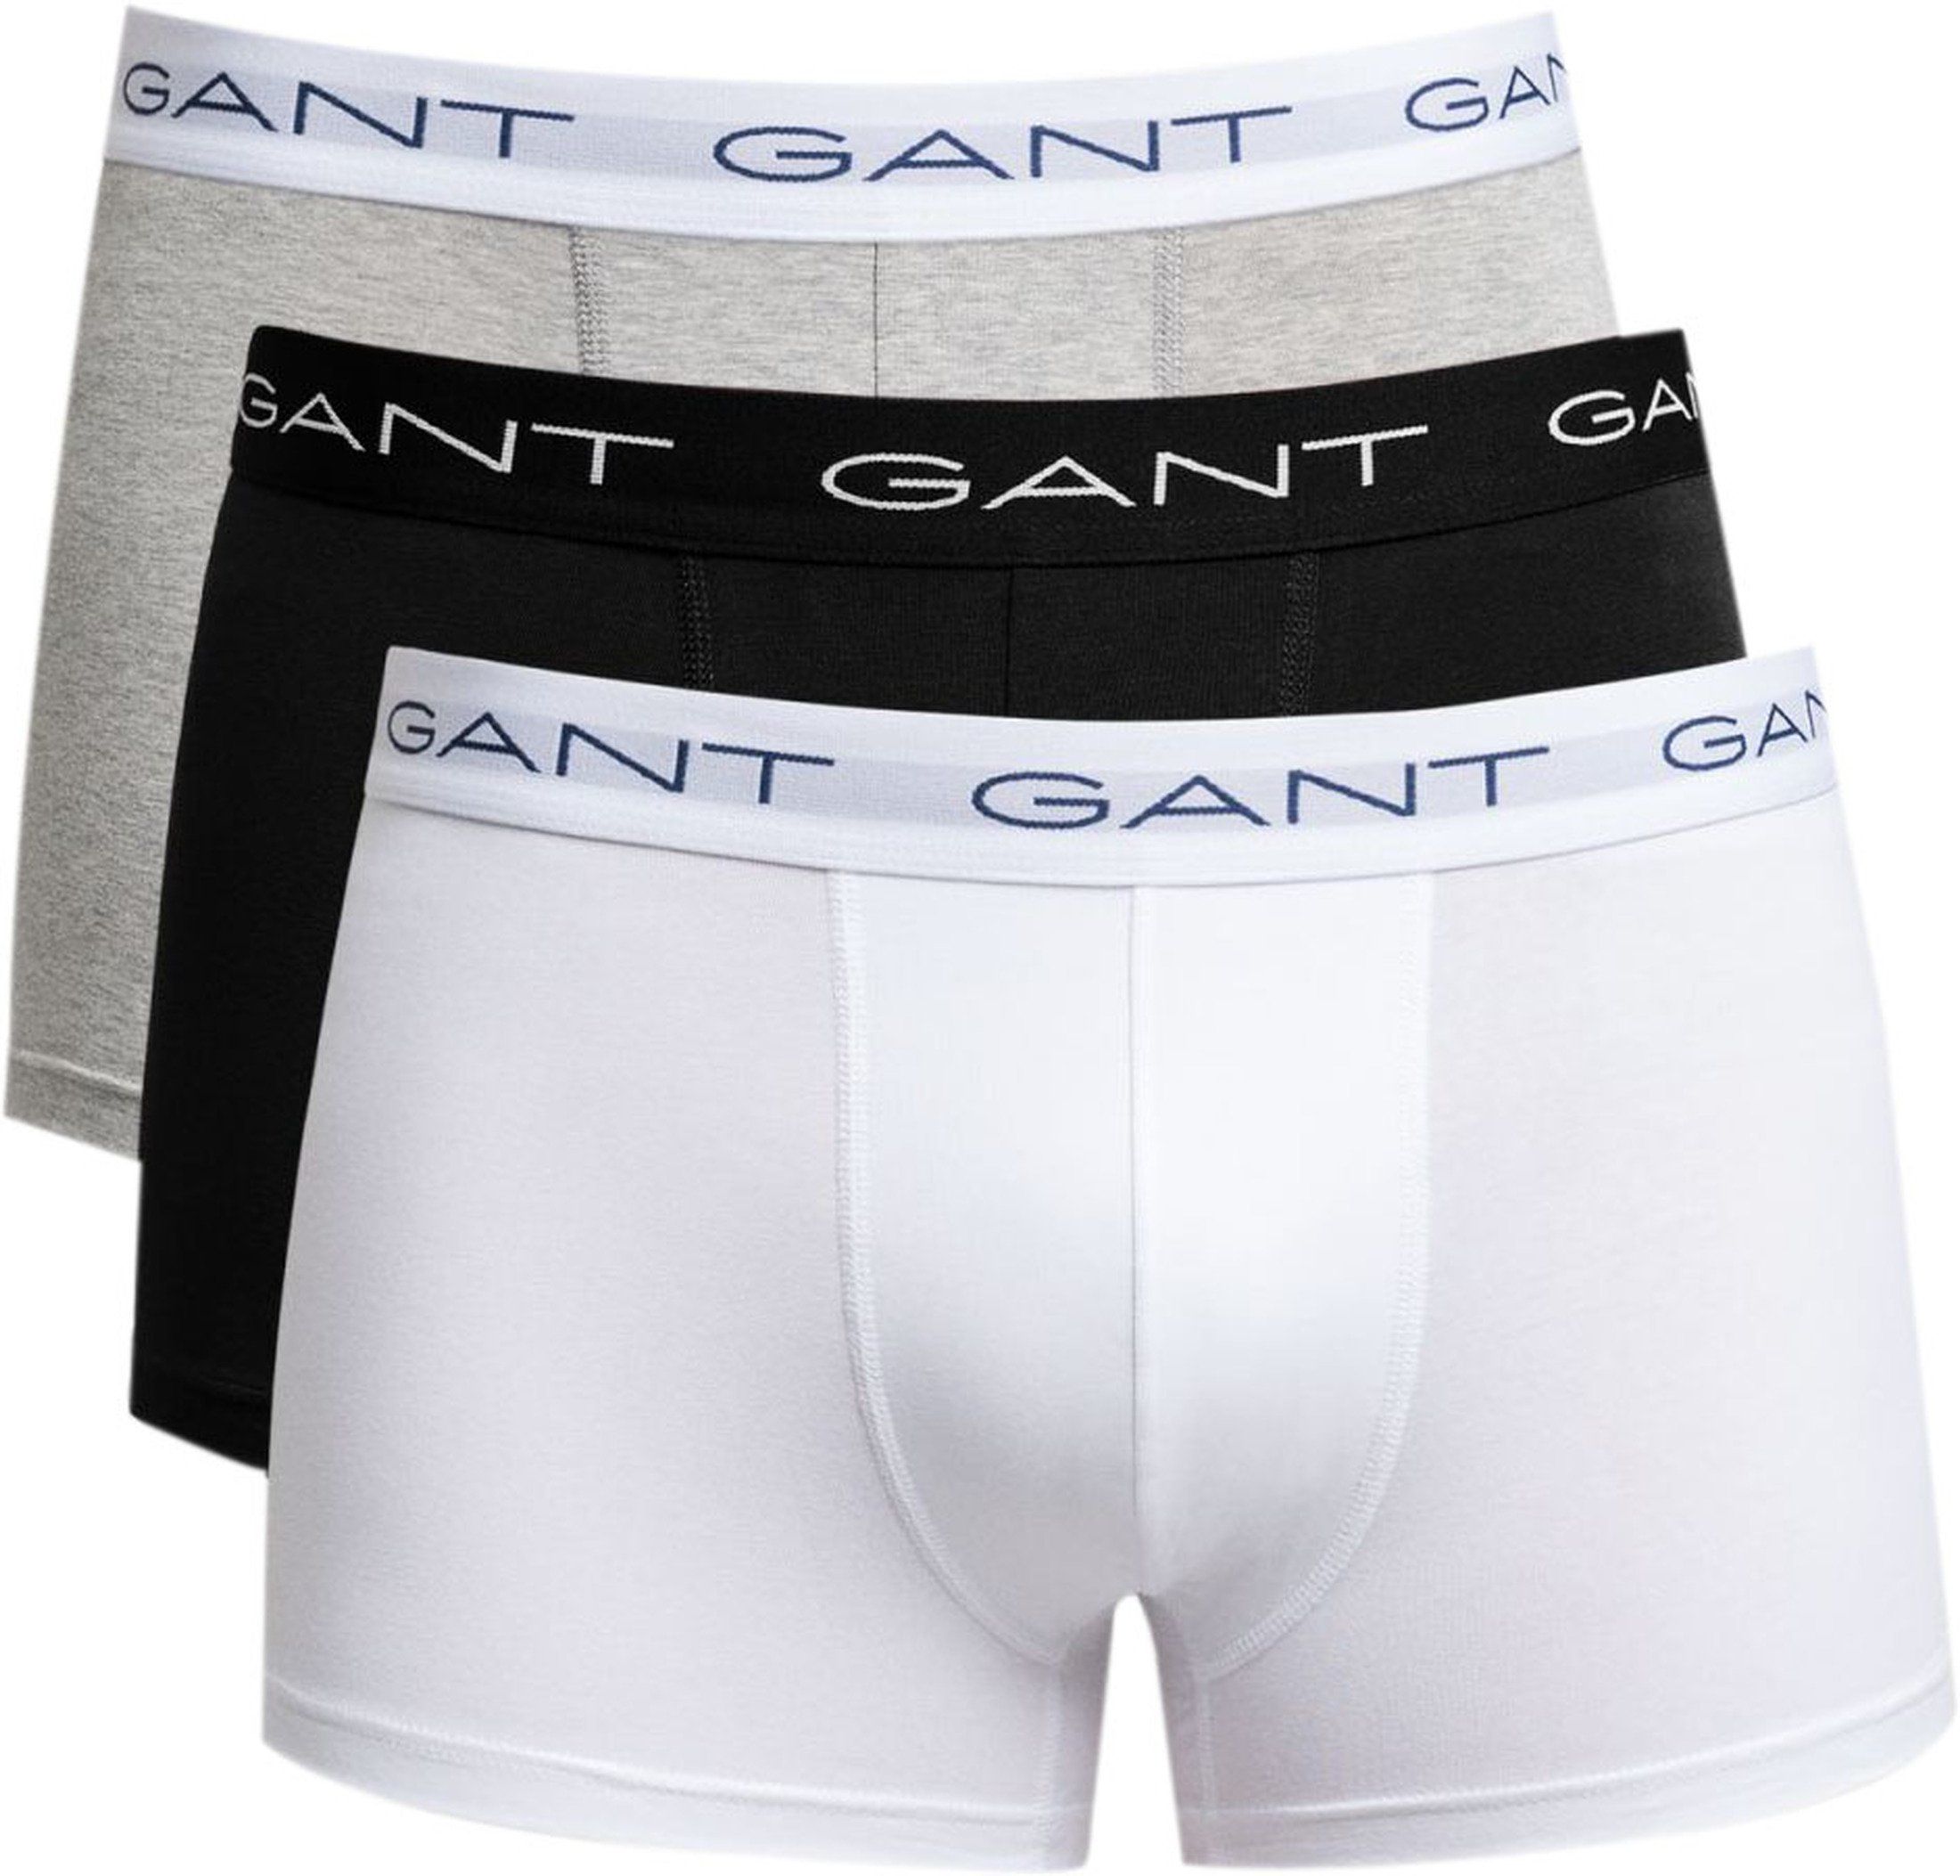 Gant Boxer-shorts Lot de 3 Trunk Multicolores Noir Blanc Gris taille M